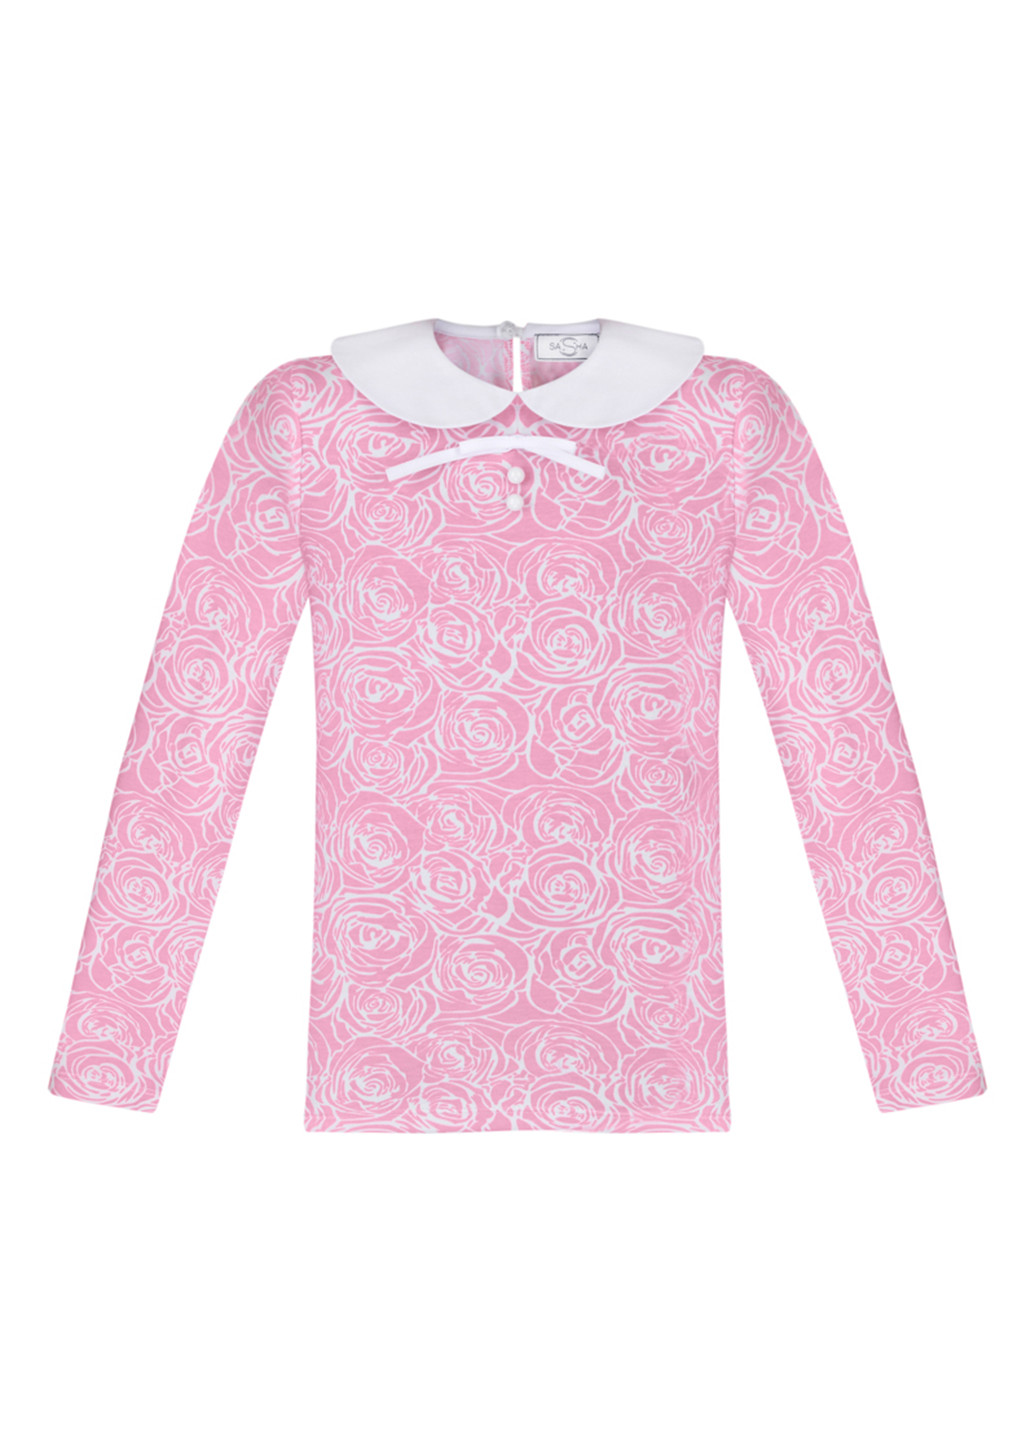 Розовая цветочной расцветки блузка Sasha демисезонная